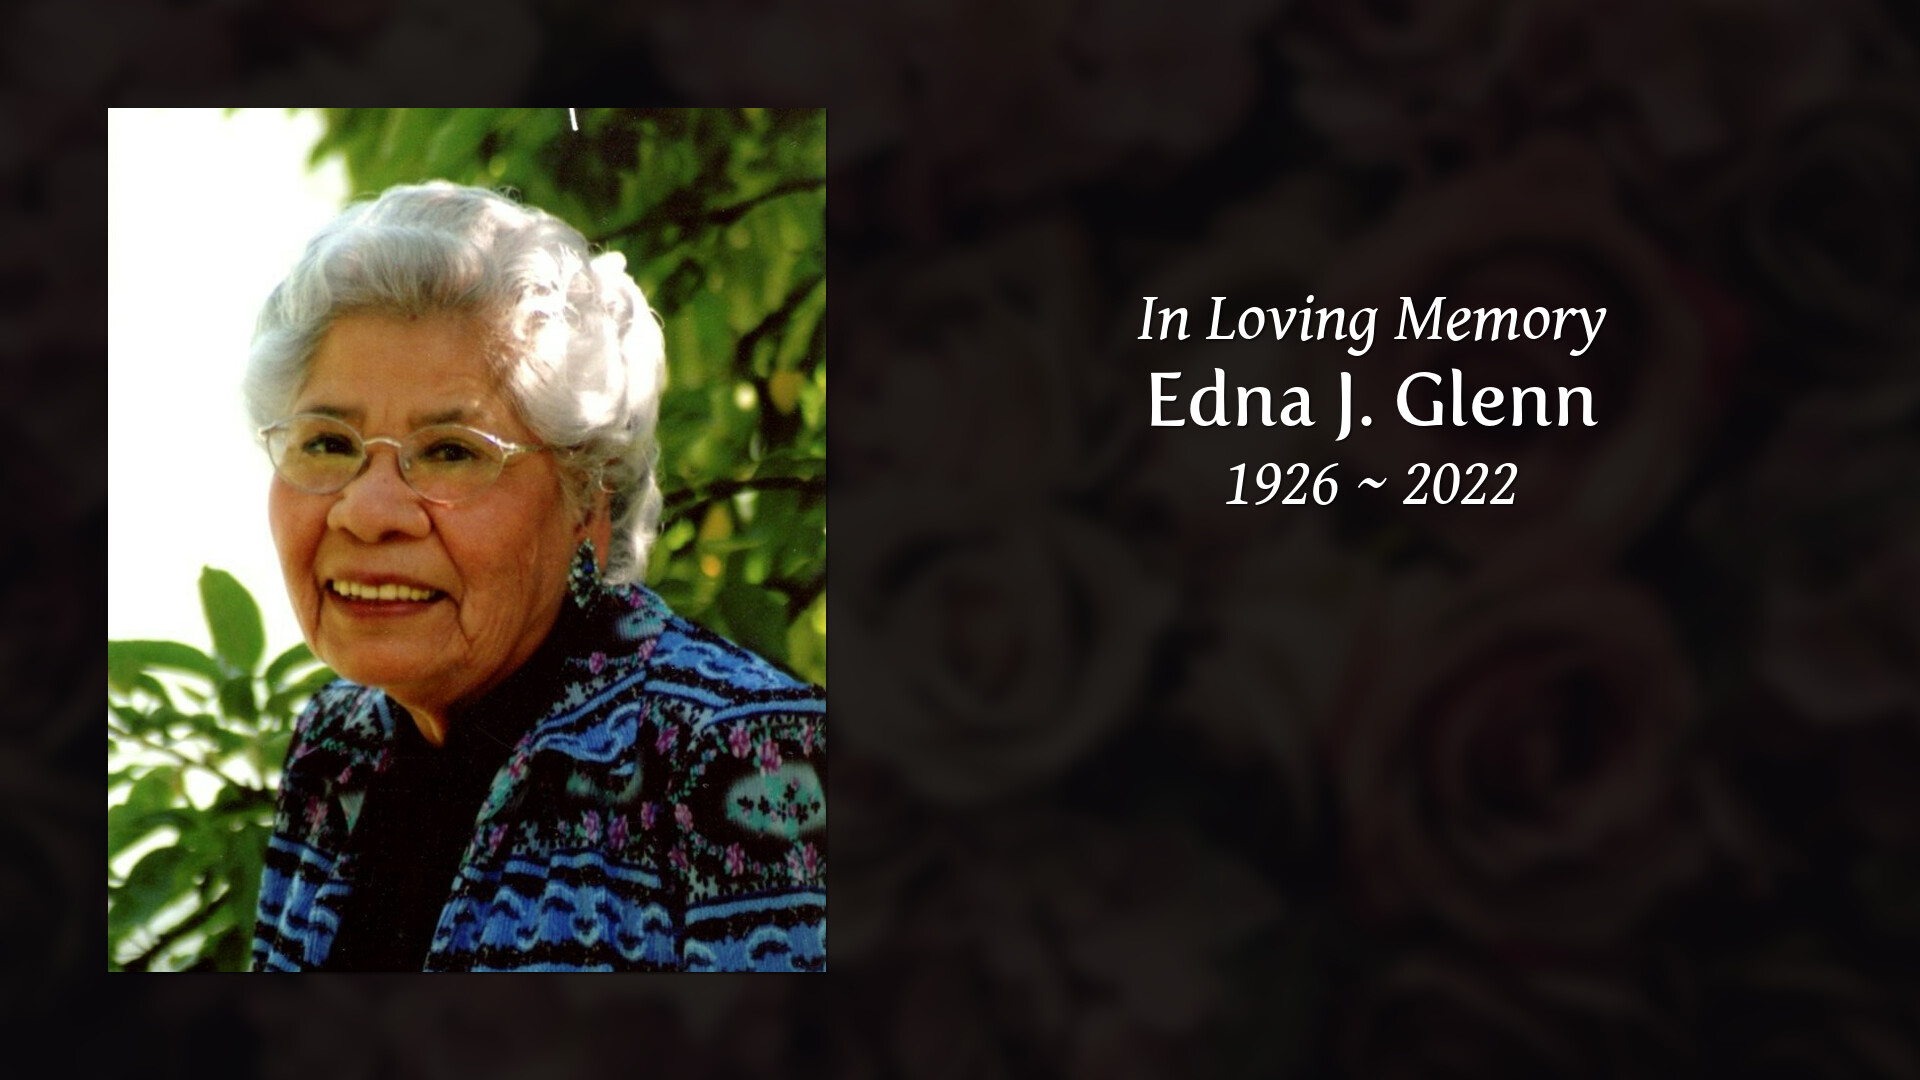 Edna J. Glenn Tribute Video